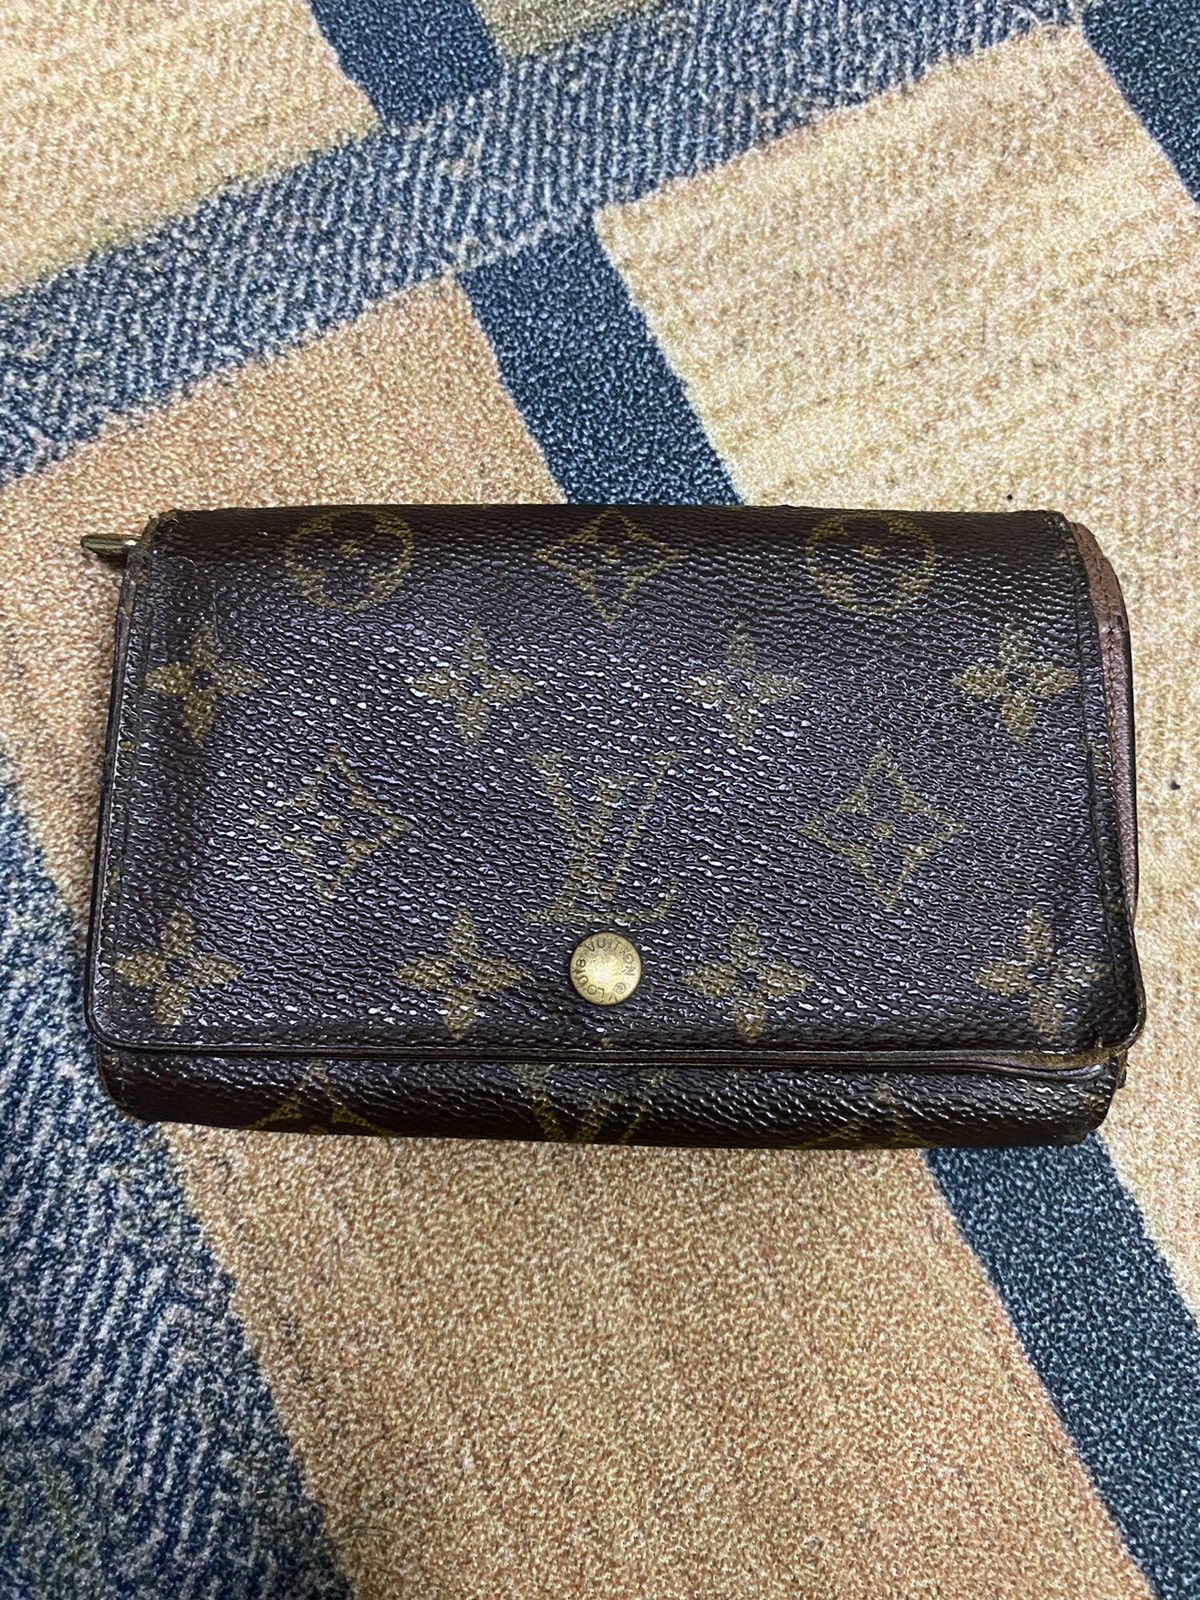 Authentic Vintage Louis Vuitton Wallet - 1